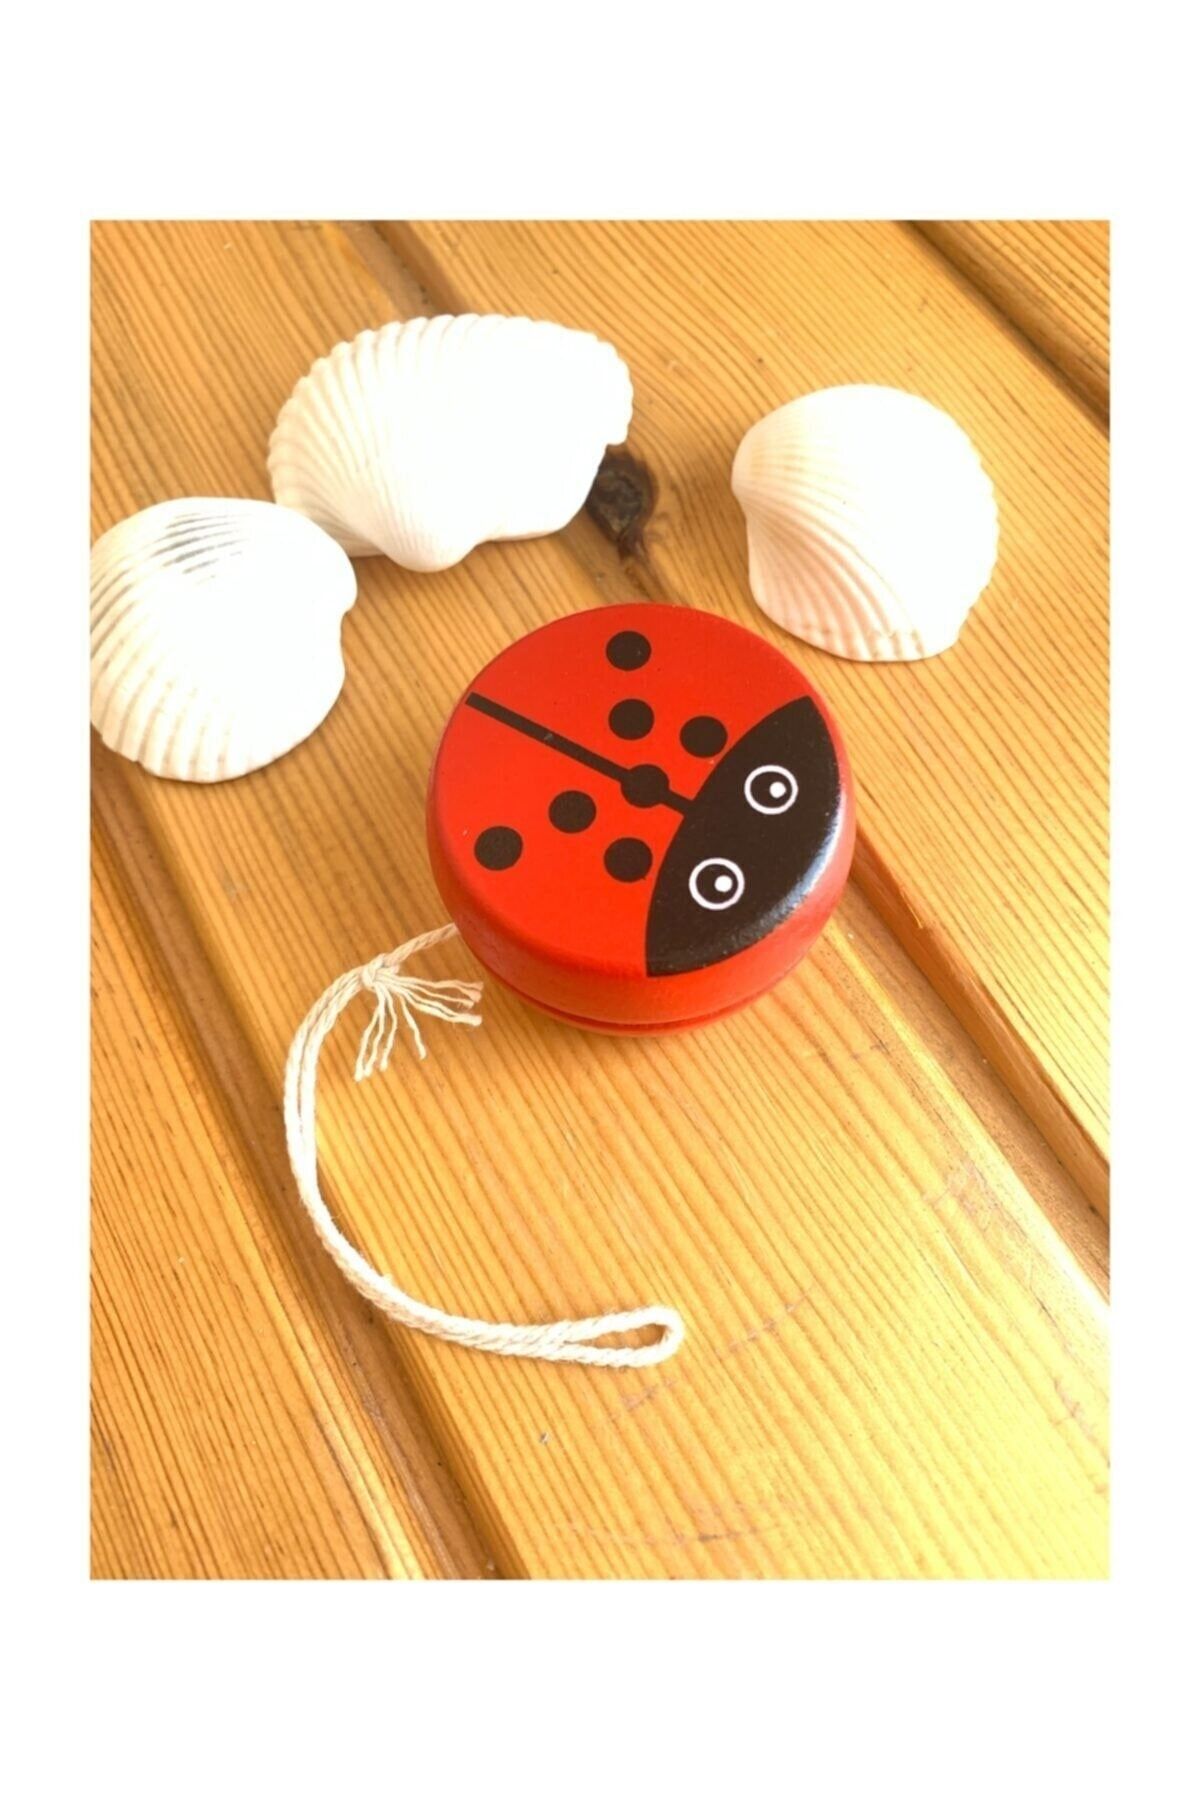 Miraculous Ladybug Wooden Yoyo